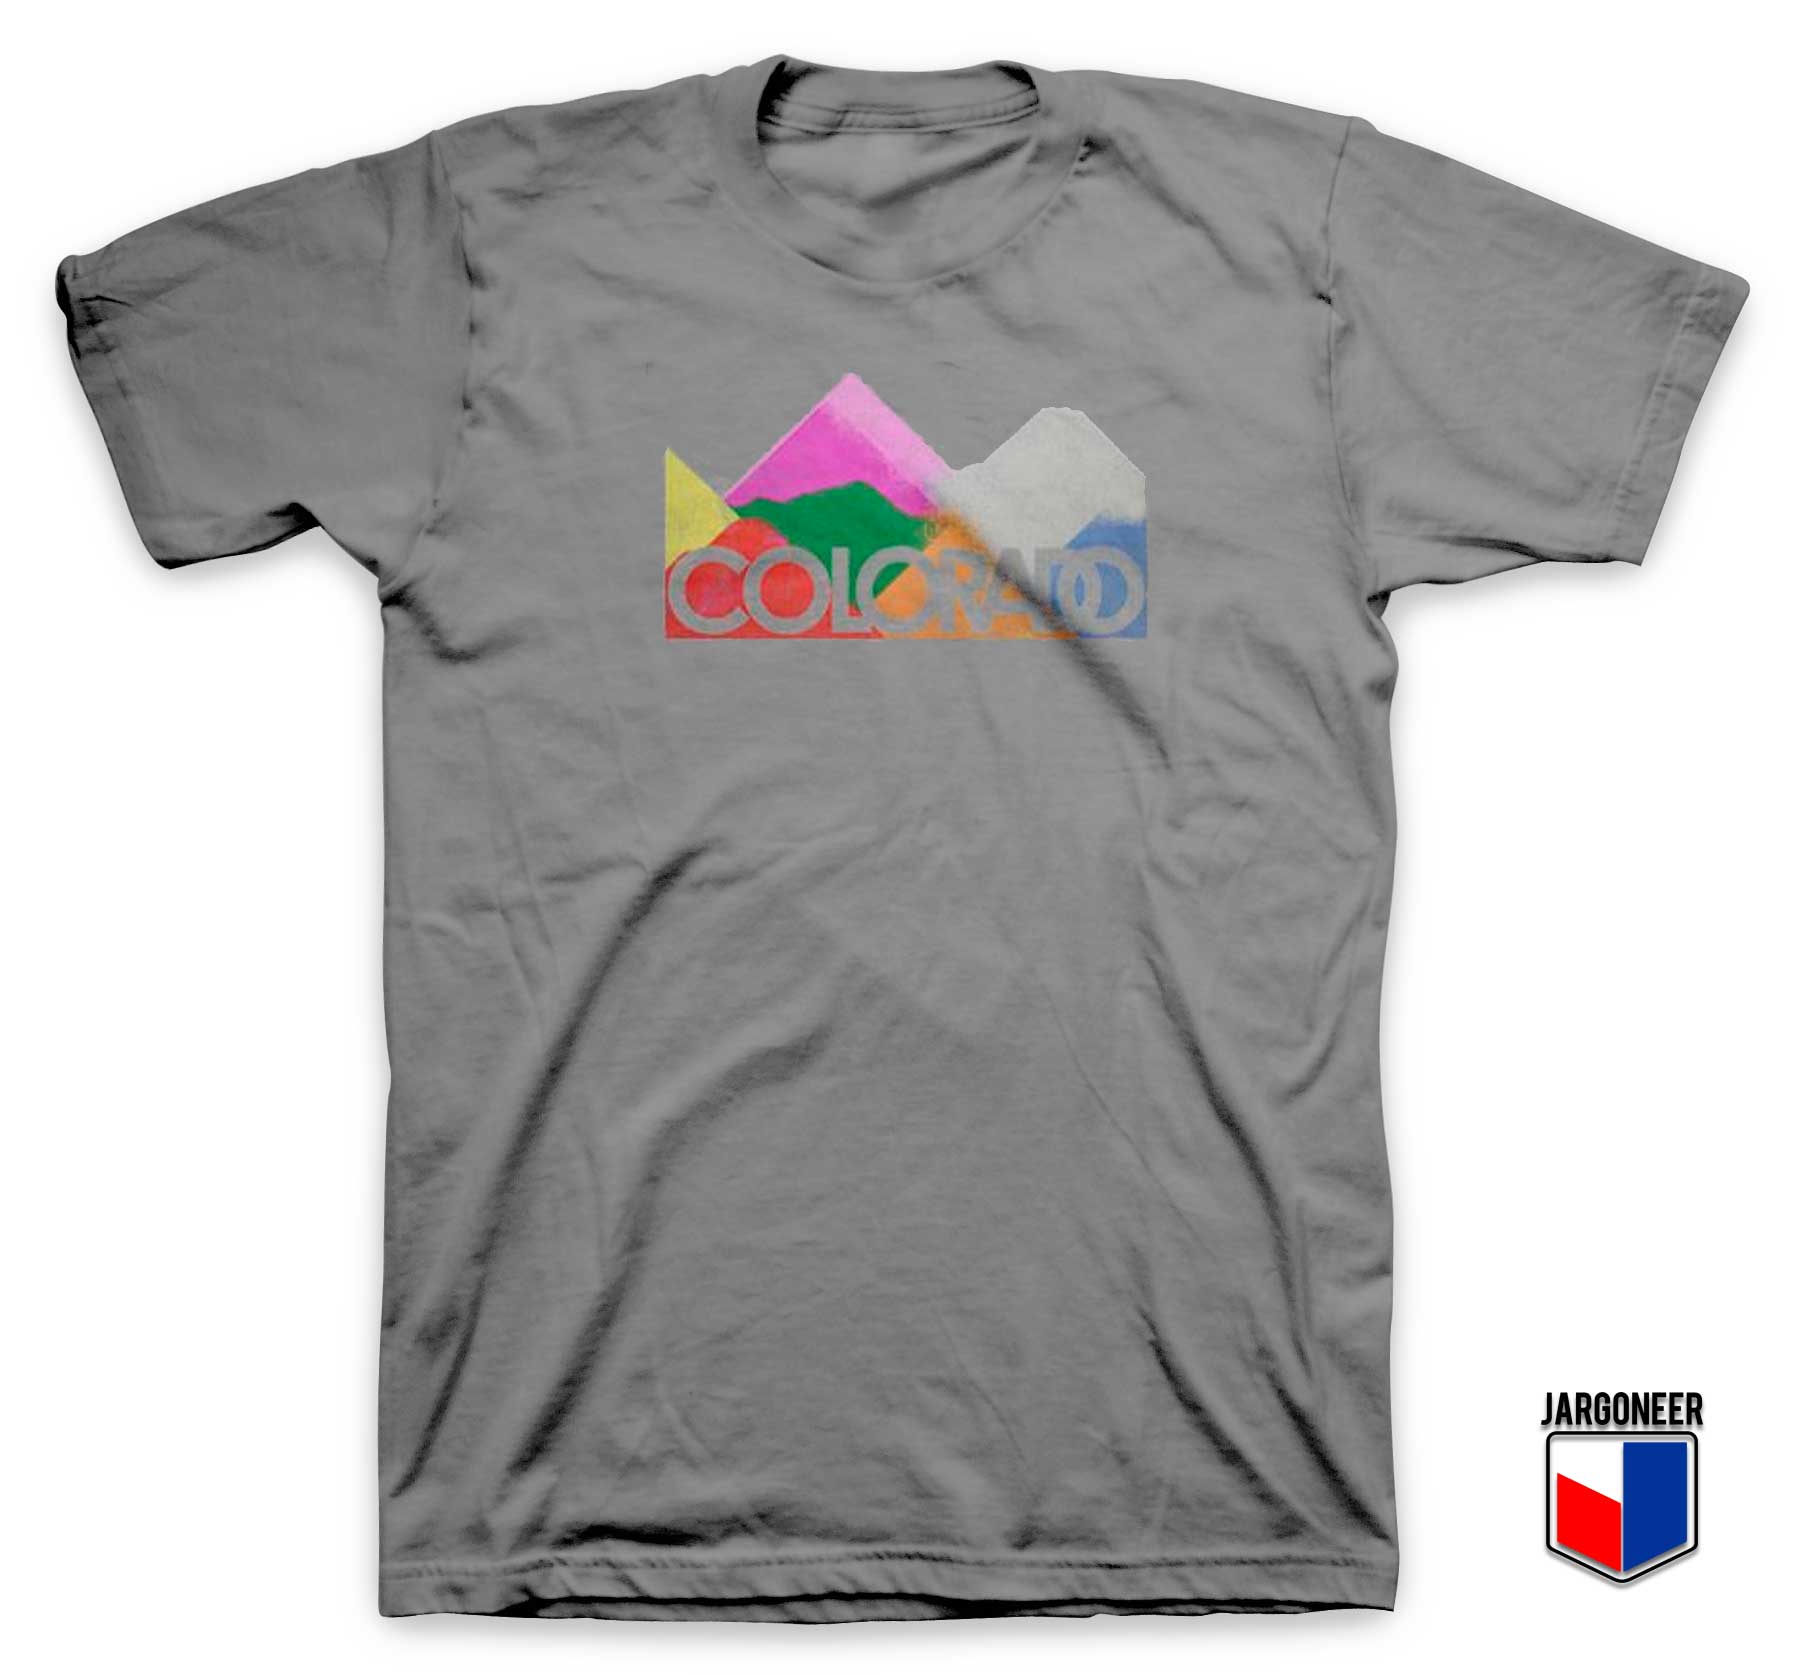 Colorado Colorful Mountain T Shirt - Shop Unique Graphic Cool Shirt Designs